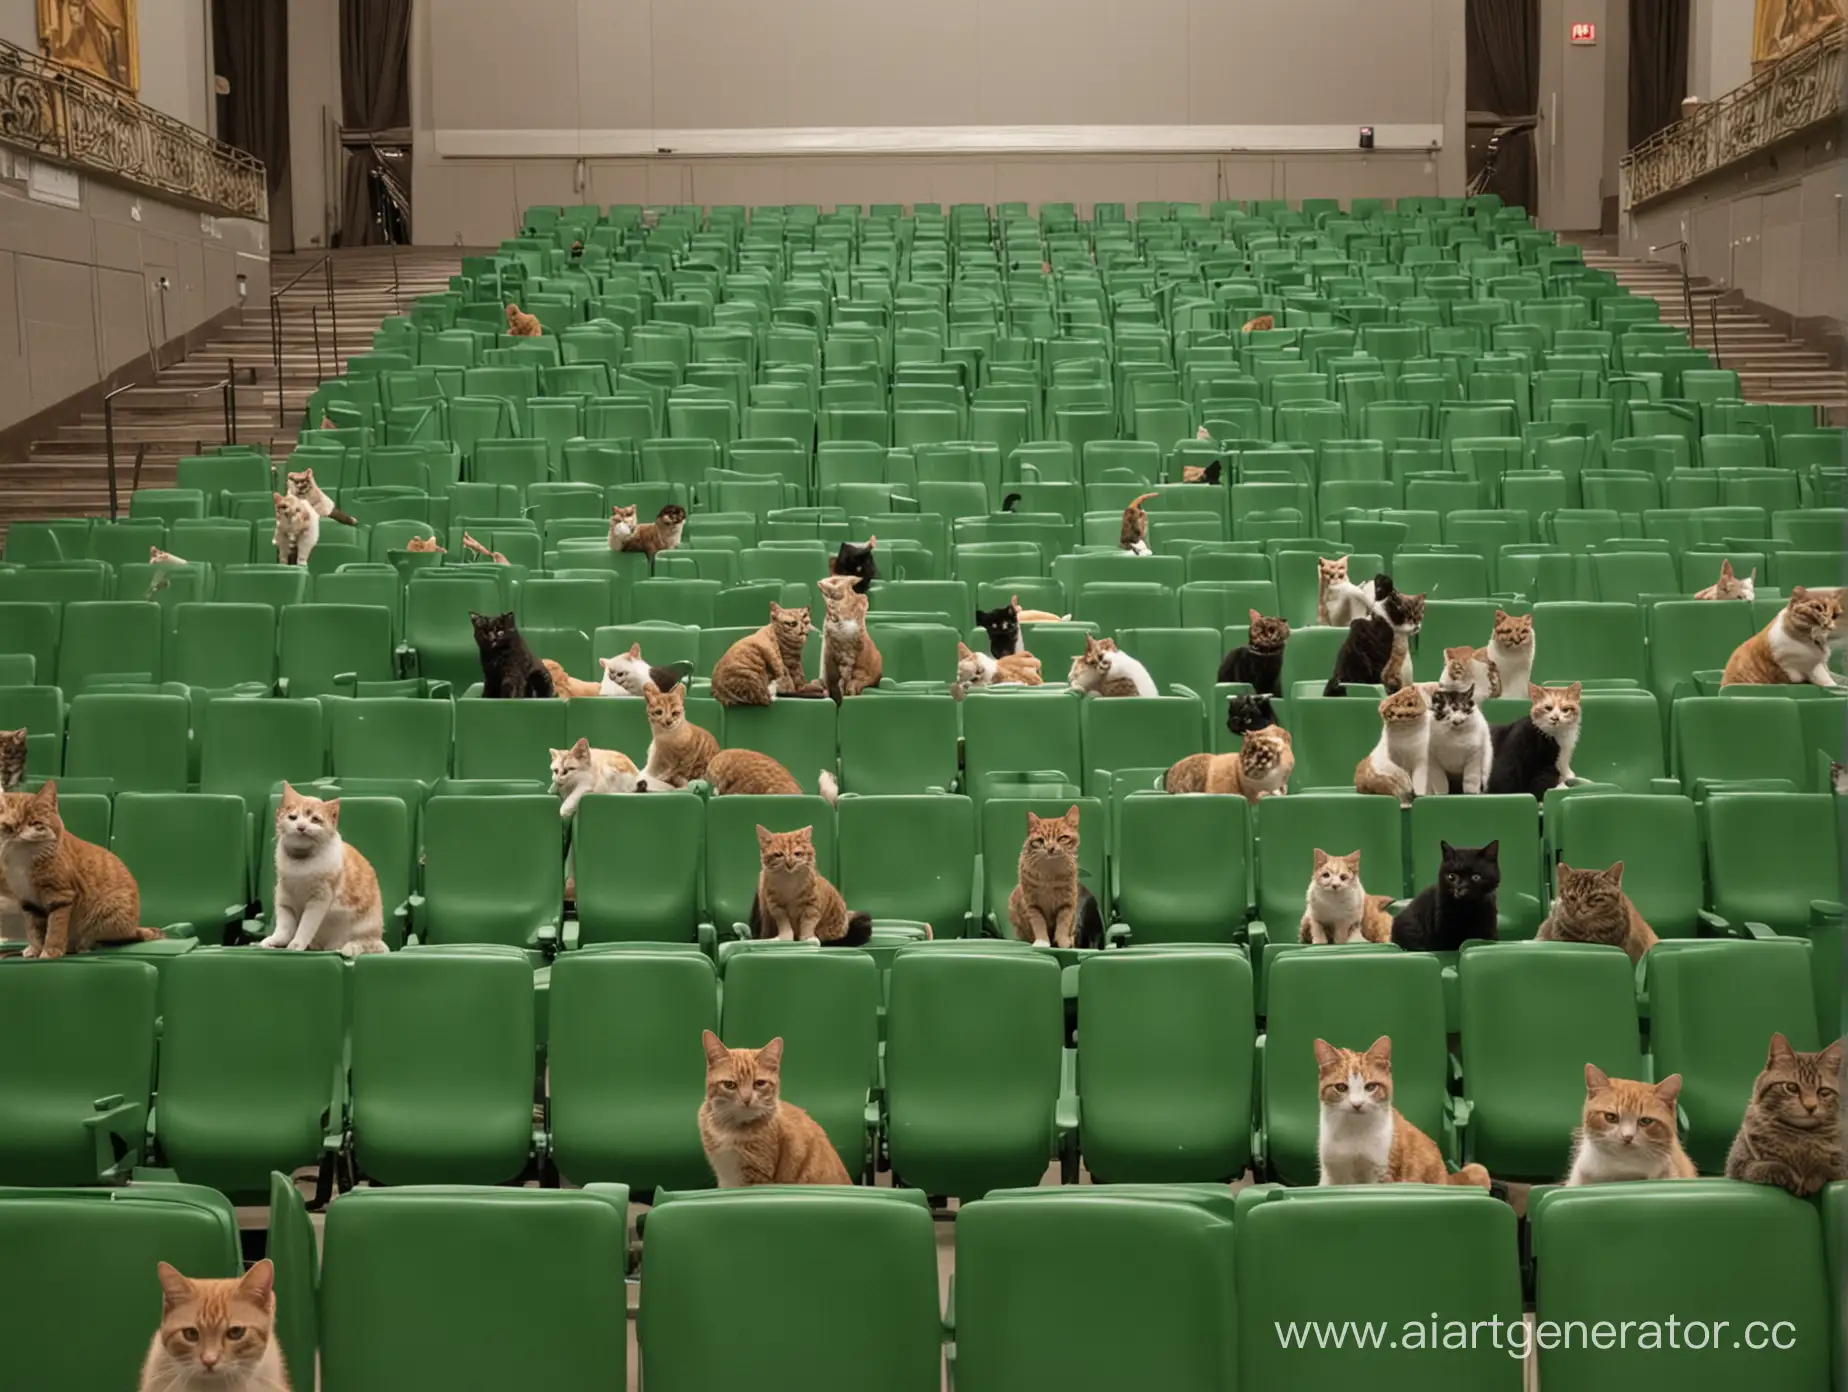 концертный зал с зелеными креслами в котором все кресла заняты котами
